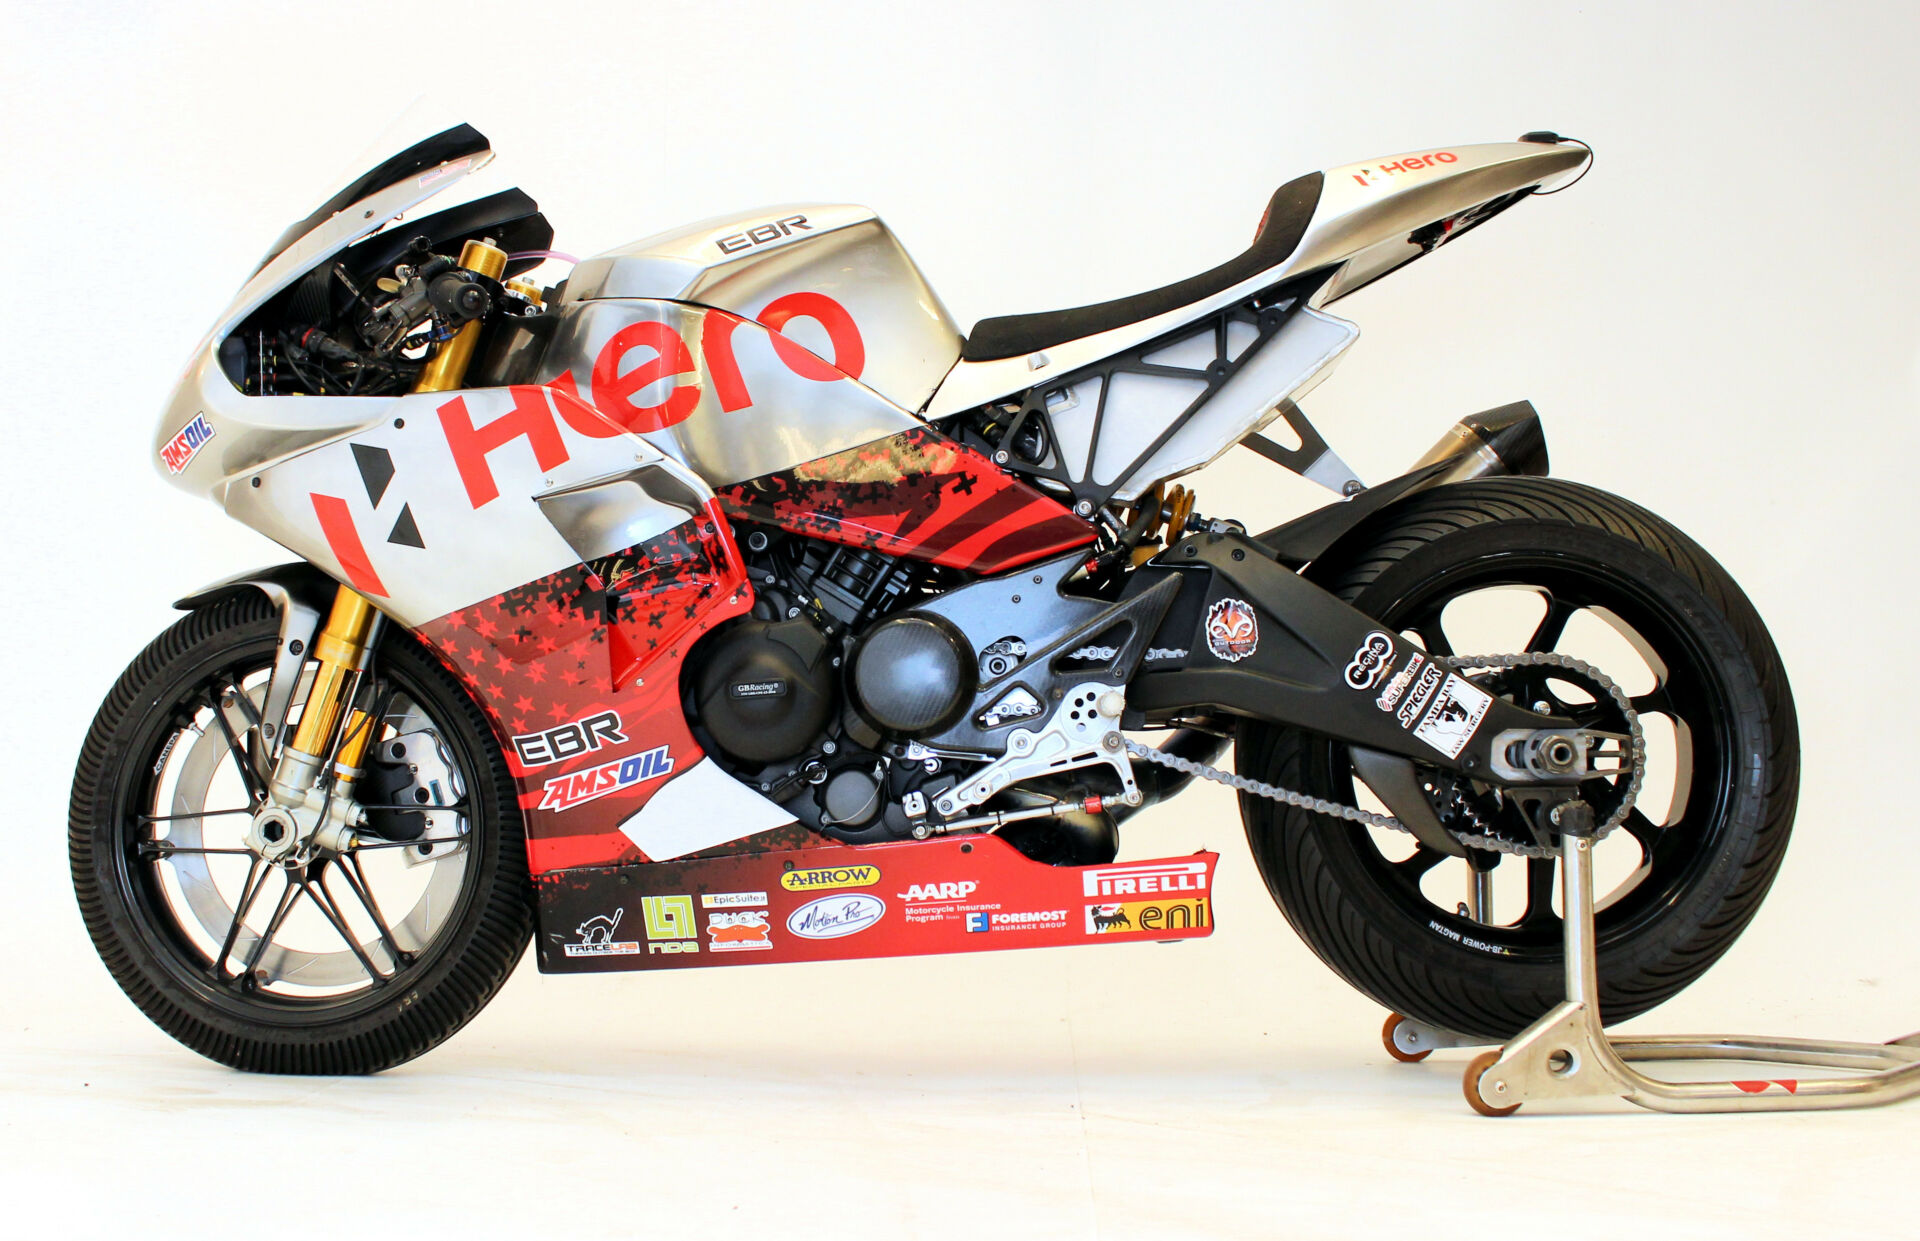 A HERO-sponsored EBR 1190 RS World Superbike racebike. Photo courtesy NCCR.